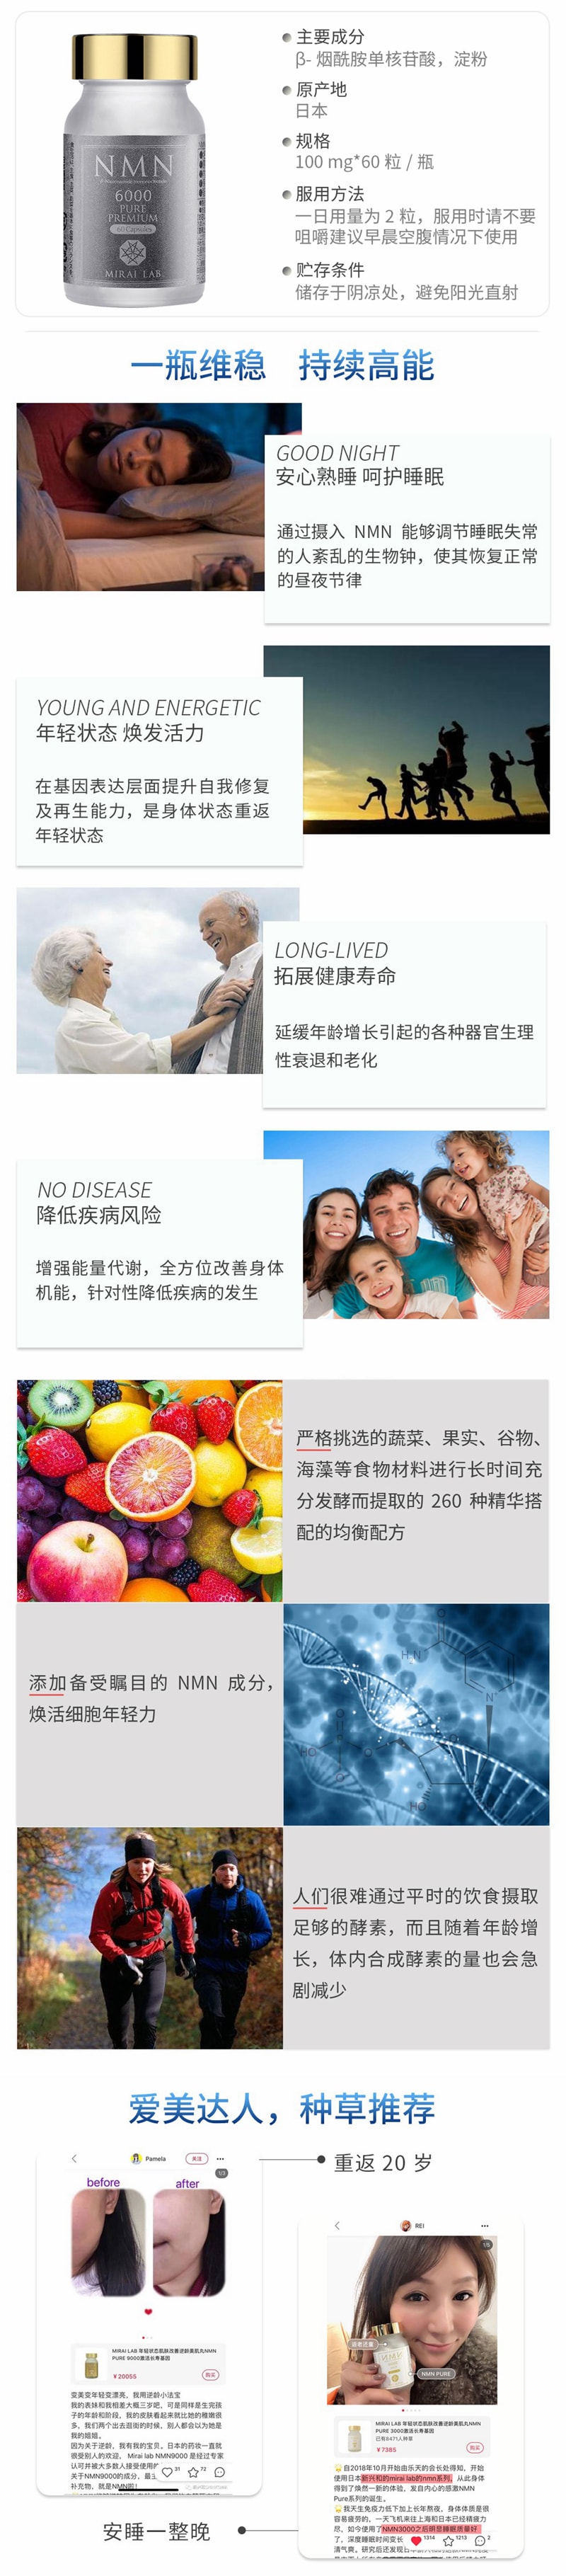 【日本直郵】新興和製藥 MIRAI LAB NMN6000 高純度抗衰老 逆齡丸